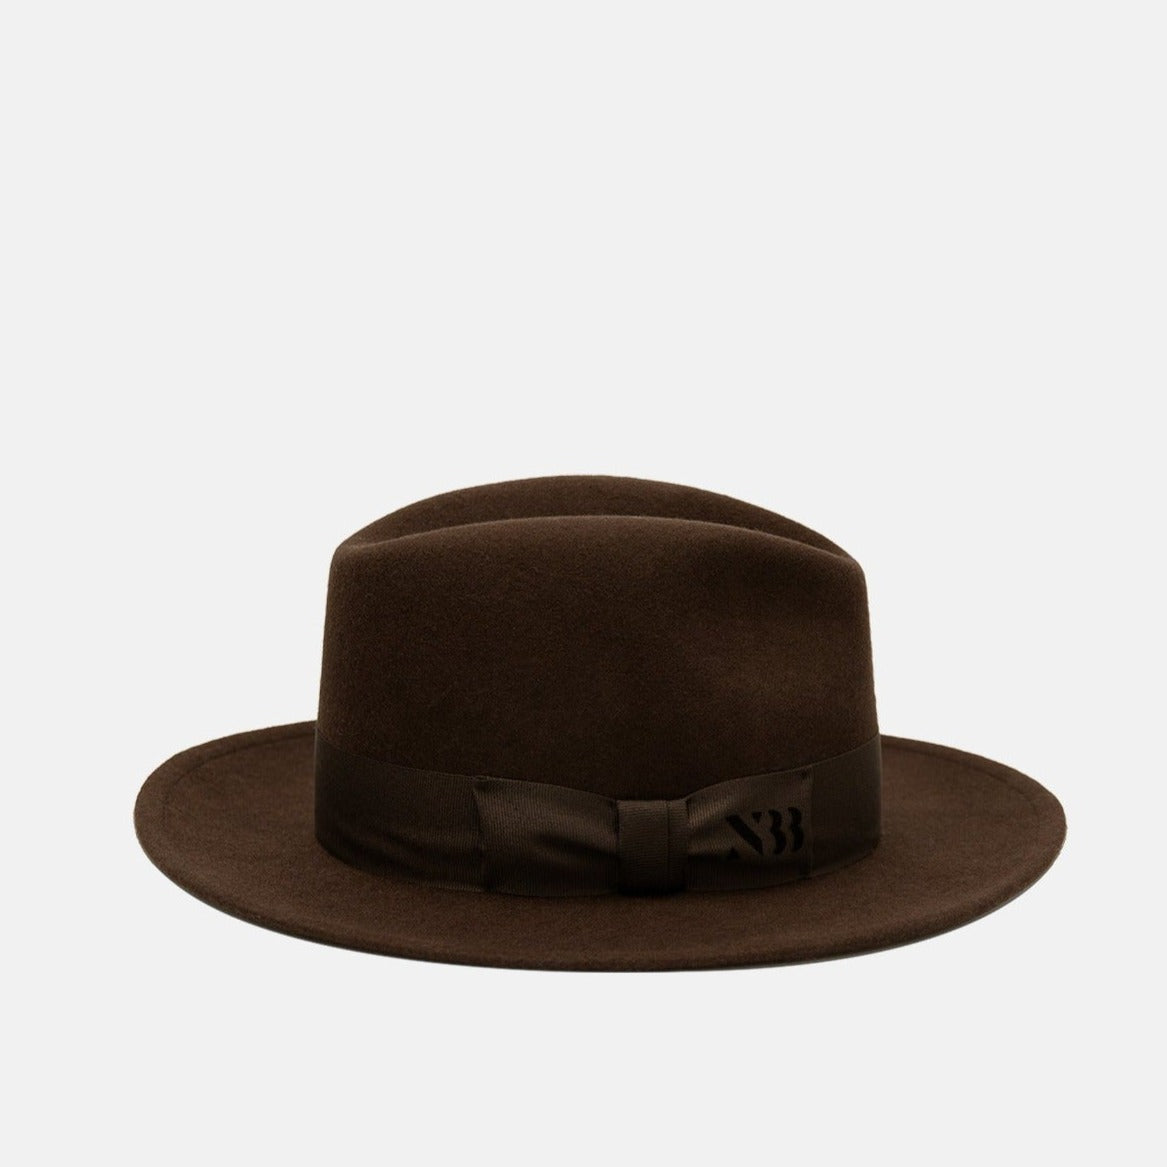 NTHIRTYTHREE - N33 - Fedora Felt Hat - Tilby Brown - handmade in Europe